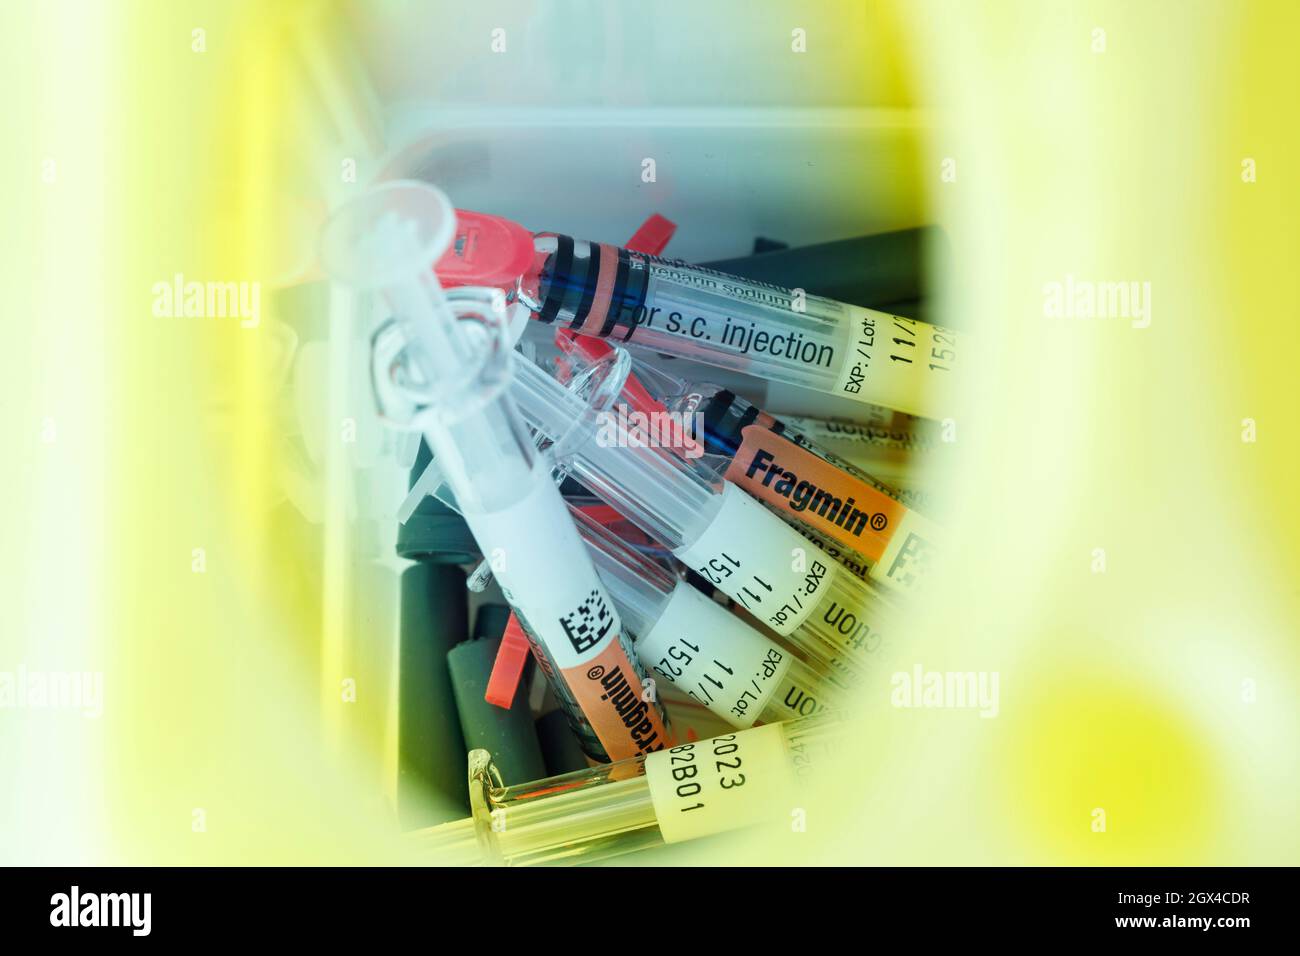 Gebrauchte Fragmin-Spritzen werden sicher in einem Sharps-Kasten oder  scharfsicher entsorgen Stockfotografie - Alamy